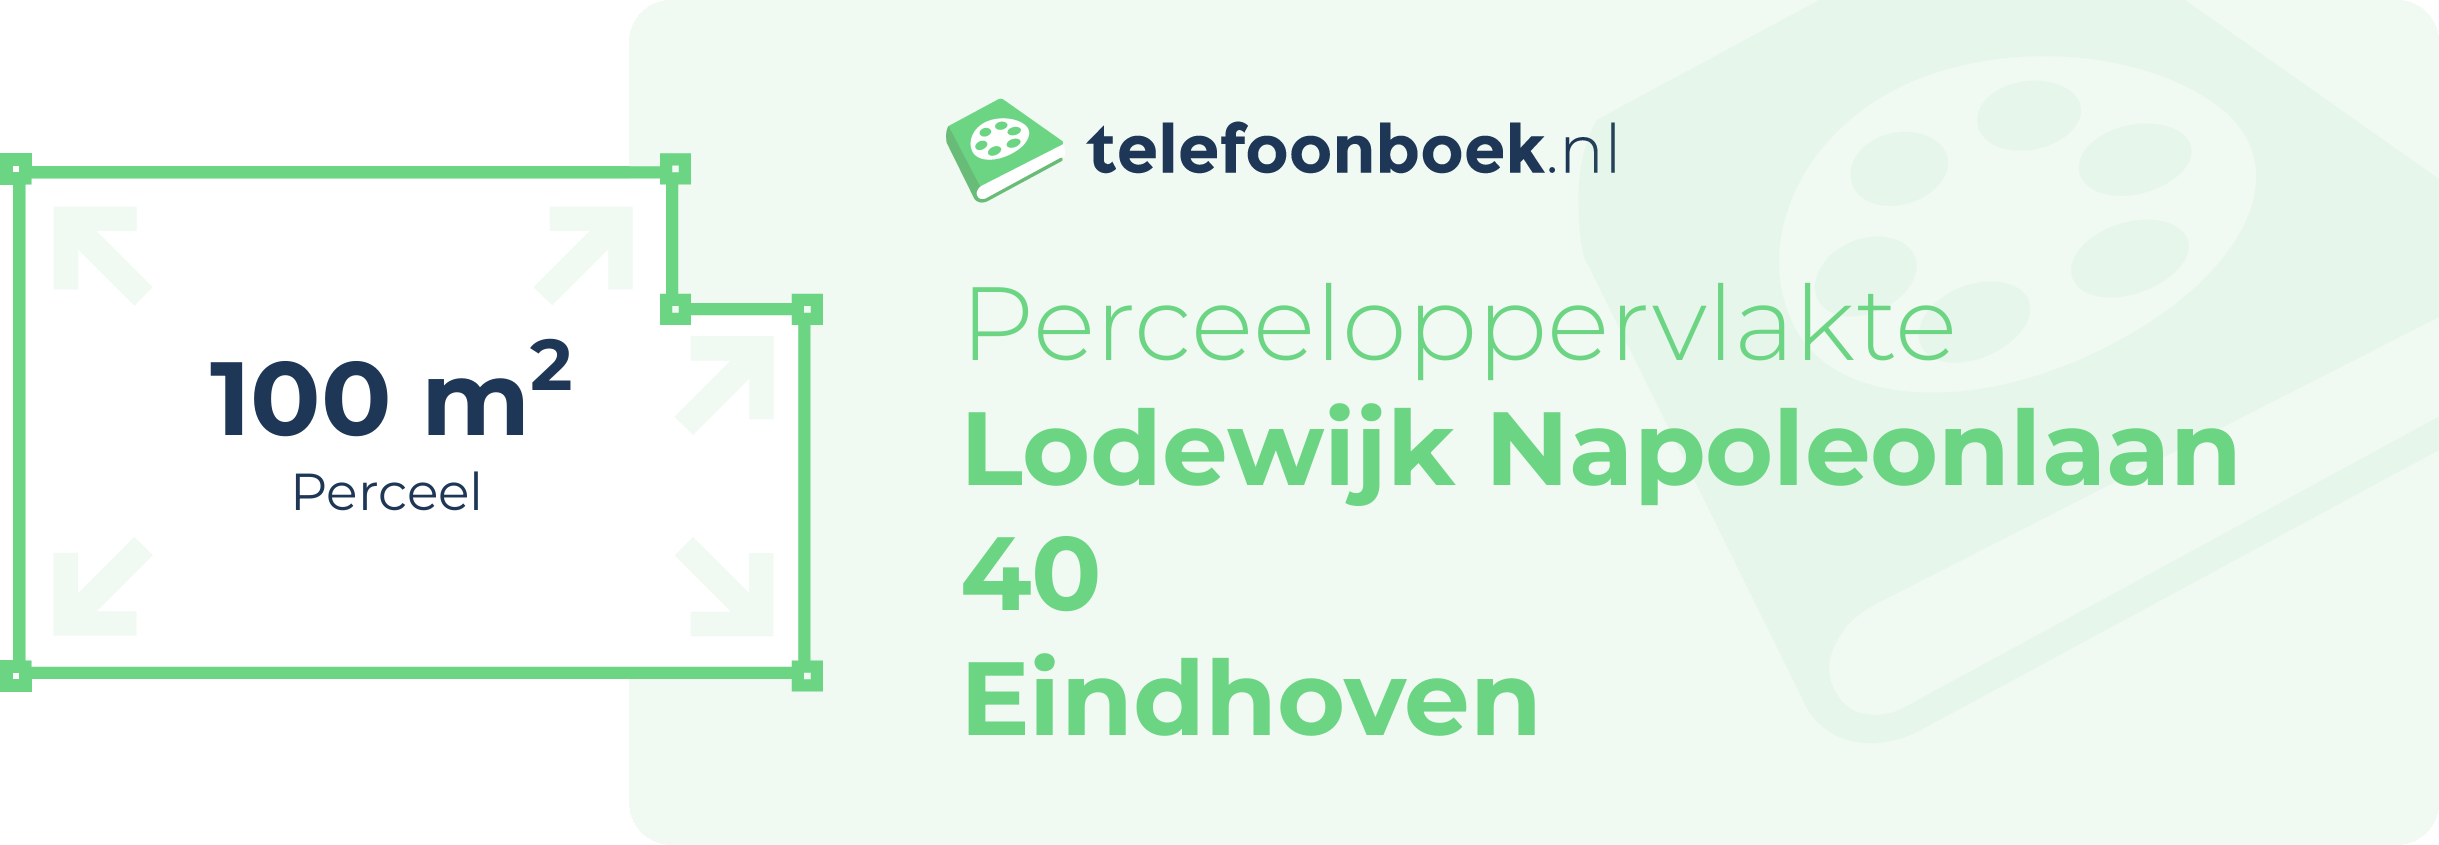 Perceeloppervlakte Lodewijk Napoleonlaan 40 Eindhoven